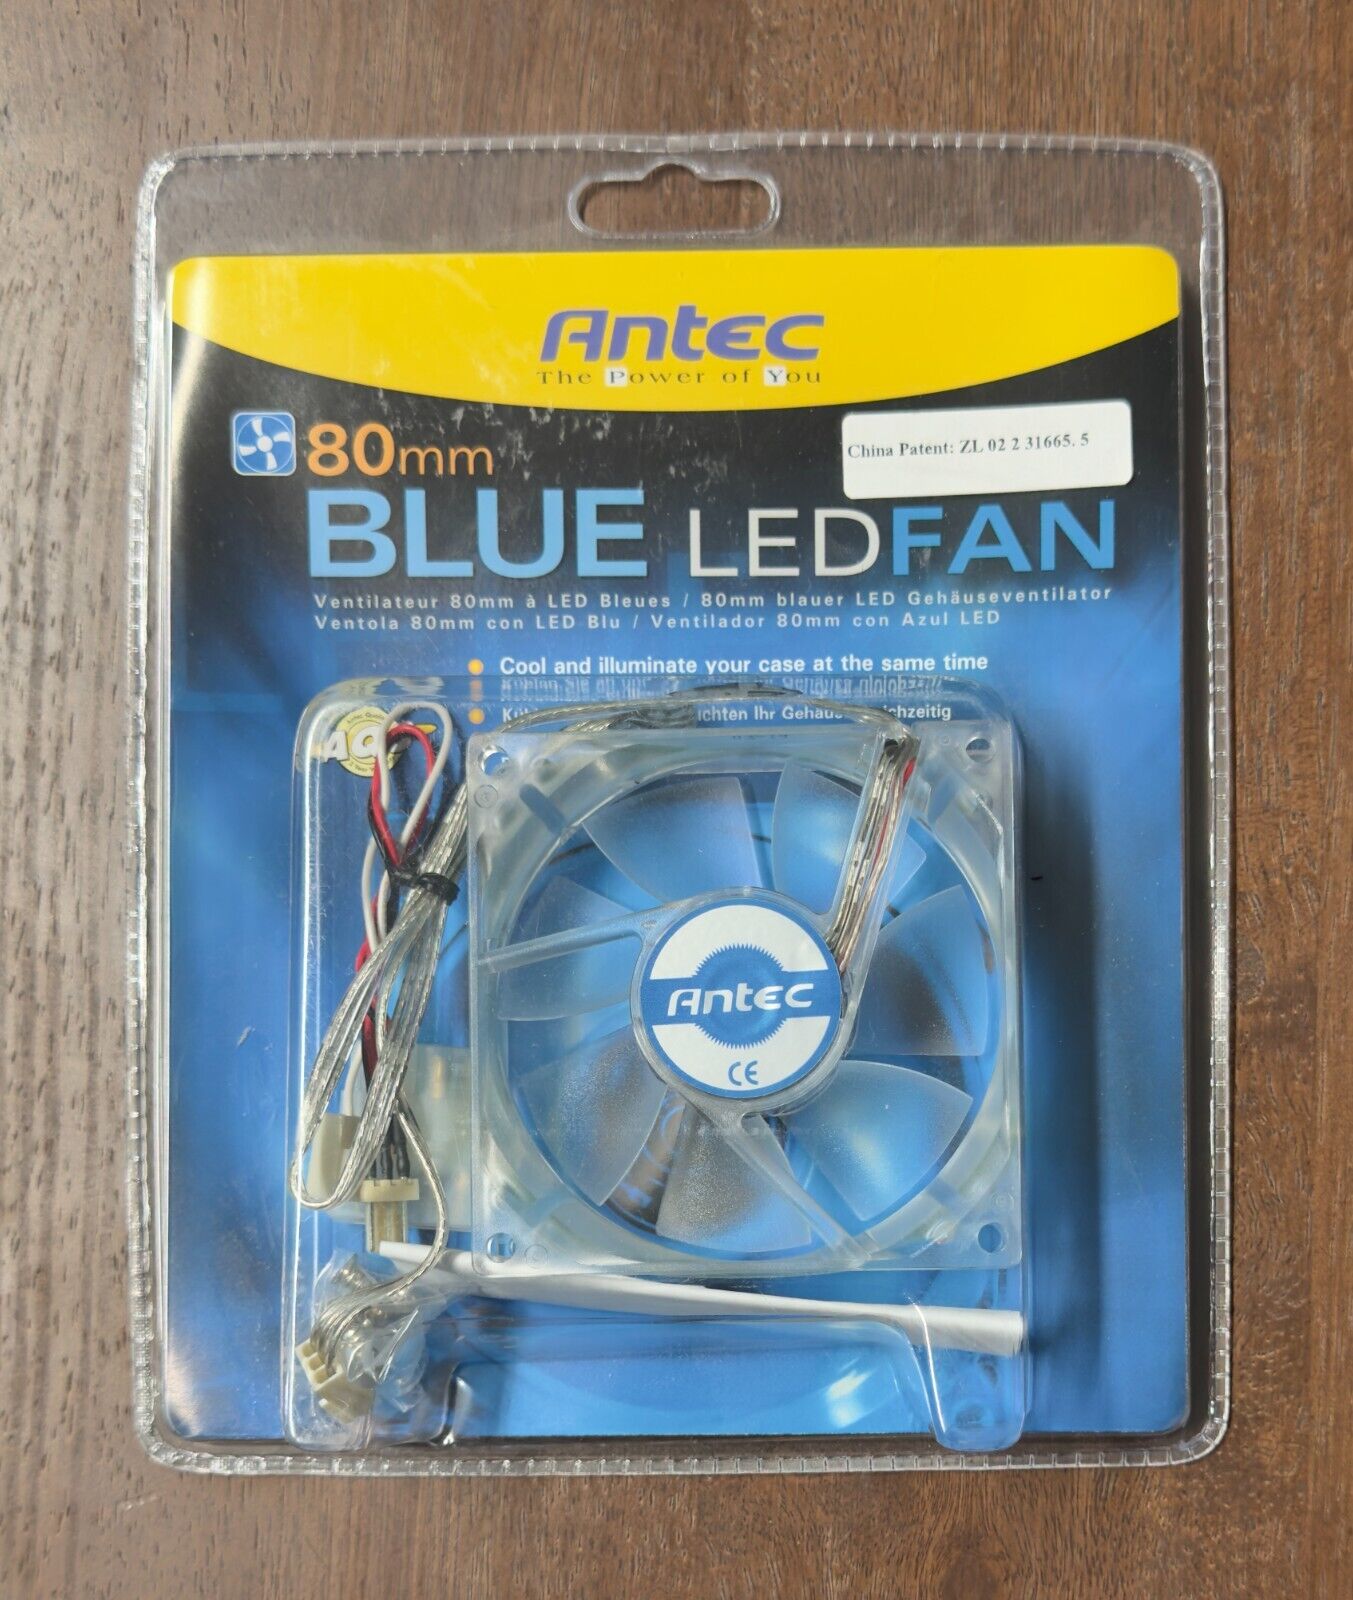 ANTEC Case Cooling Fan Blue LED 80mm X 80mm x 25.4mm Fan - New Sealed